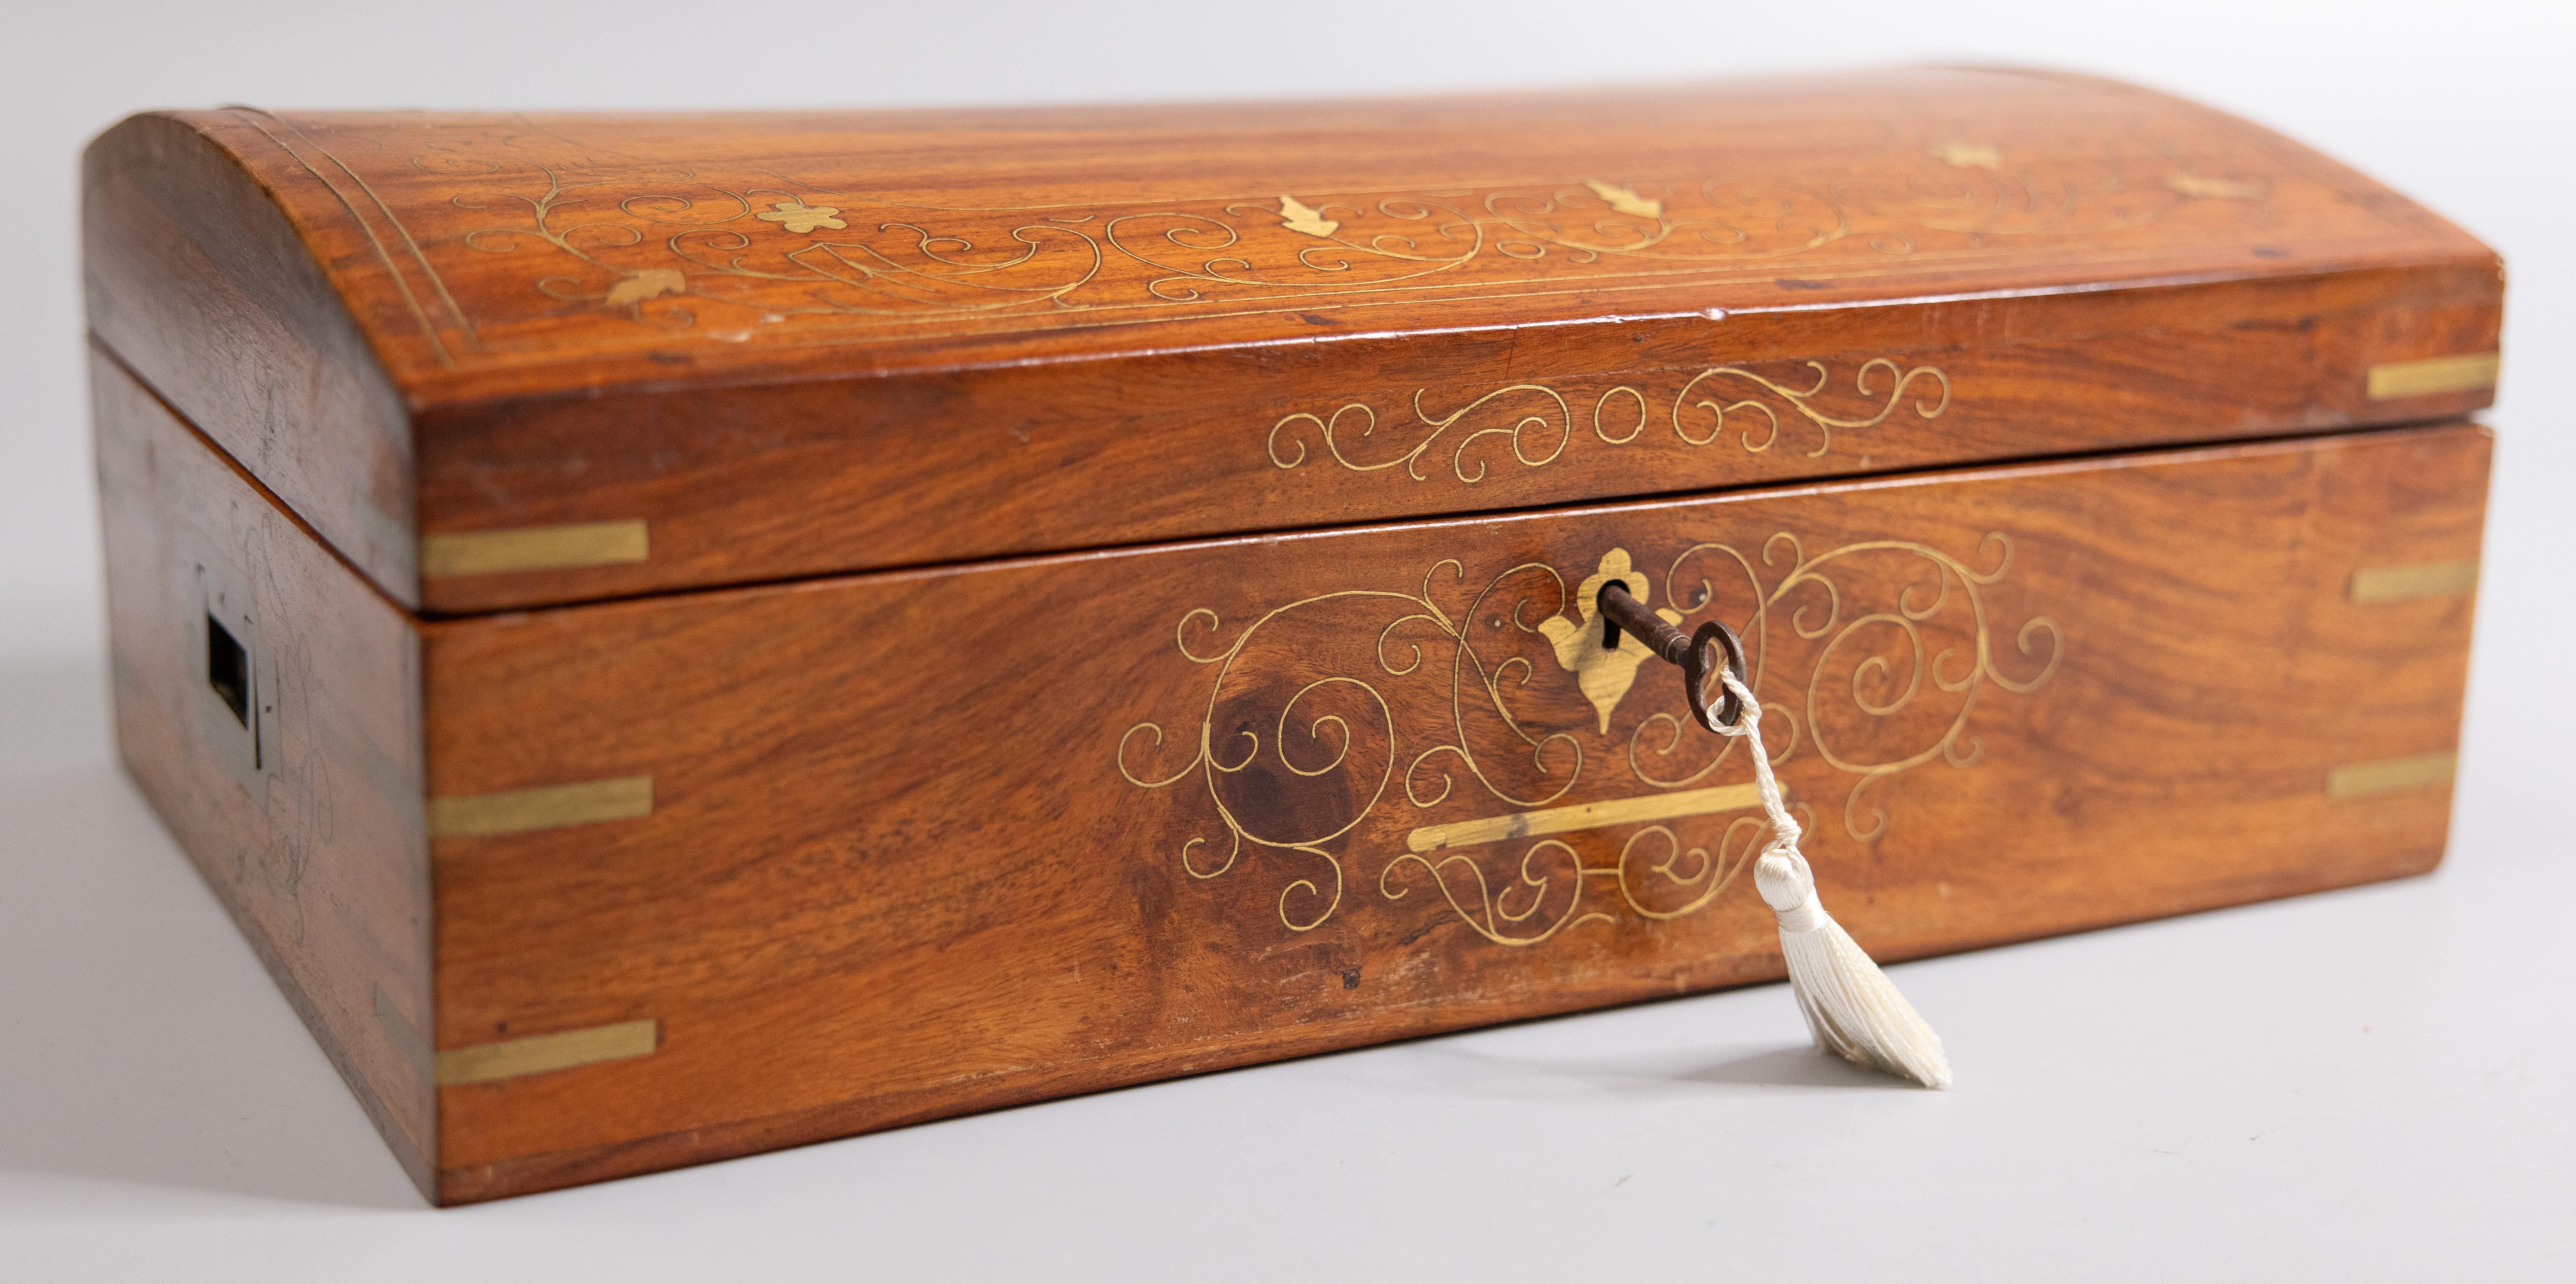 Superbe boîte à ouvrage ancienne en chêne et en boulle du XIXe siècle, avec un intérieur aménagé, un plateau à bijoux intérieur amovible, et une serrure et une clé d'origine en parfait état de marche, vers 1880. Cette belle boîte est ornée de